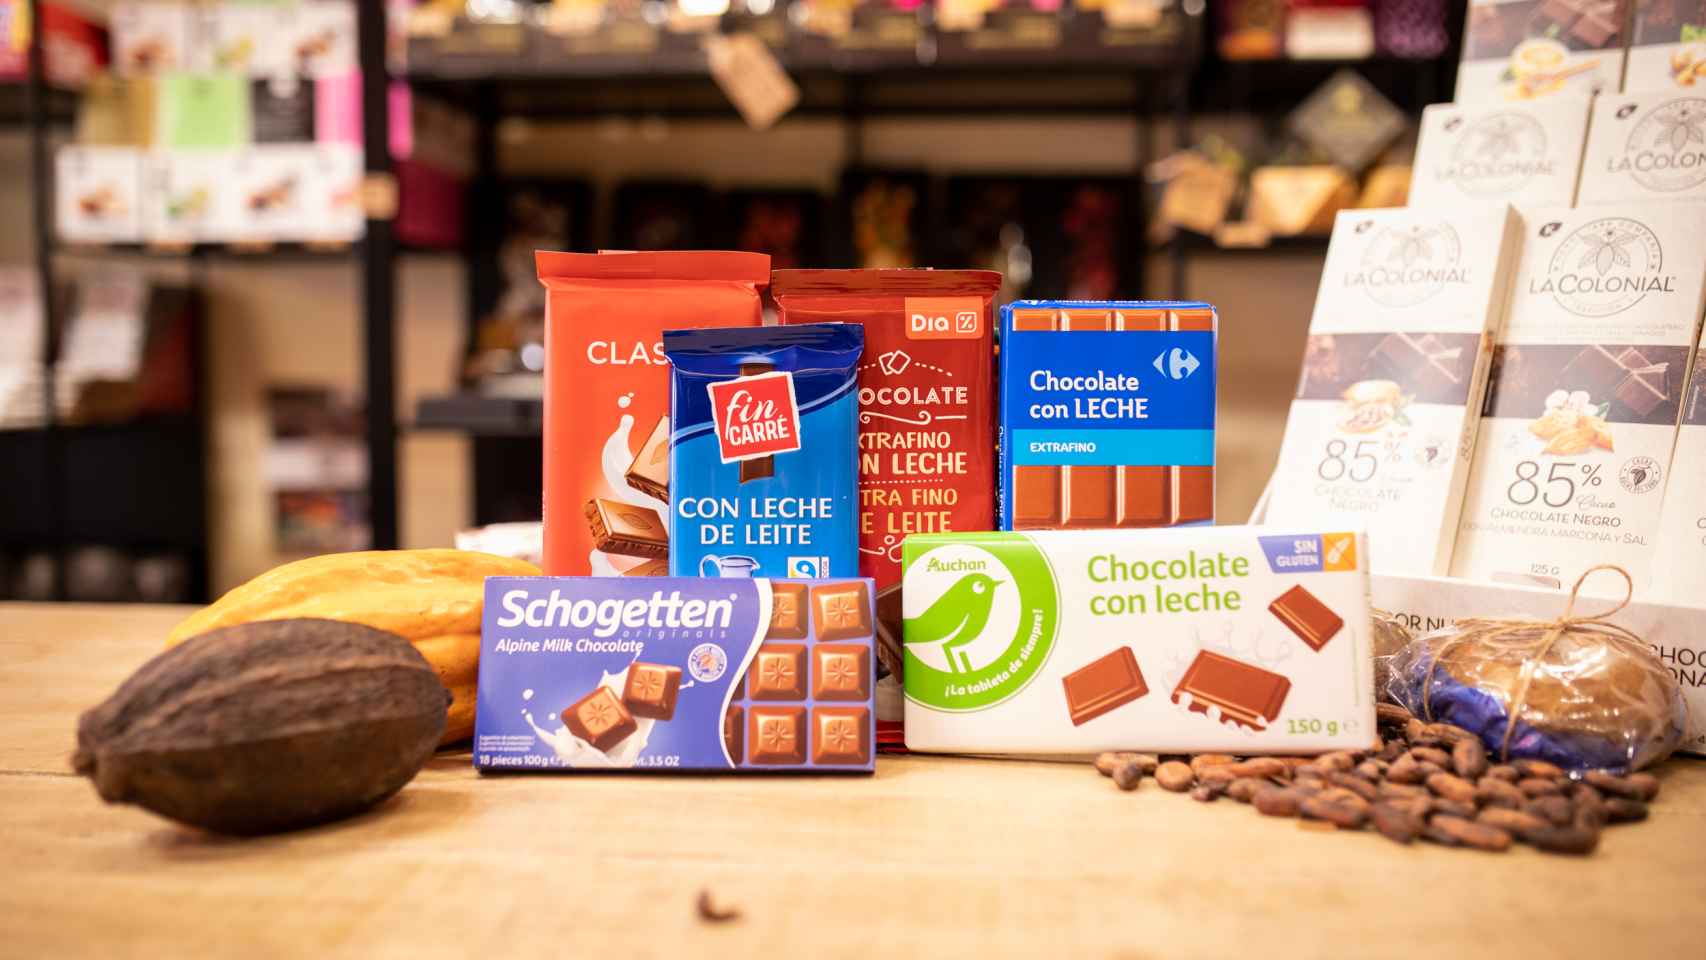 Las seis tabletas de chocolate con leche de los supermercados analizadas en la cata.